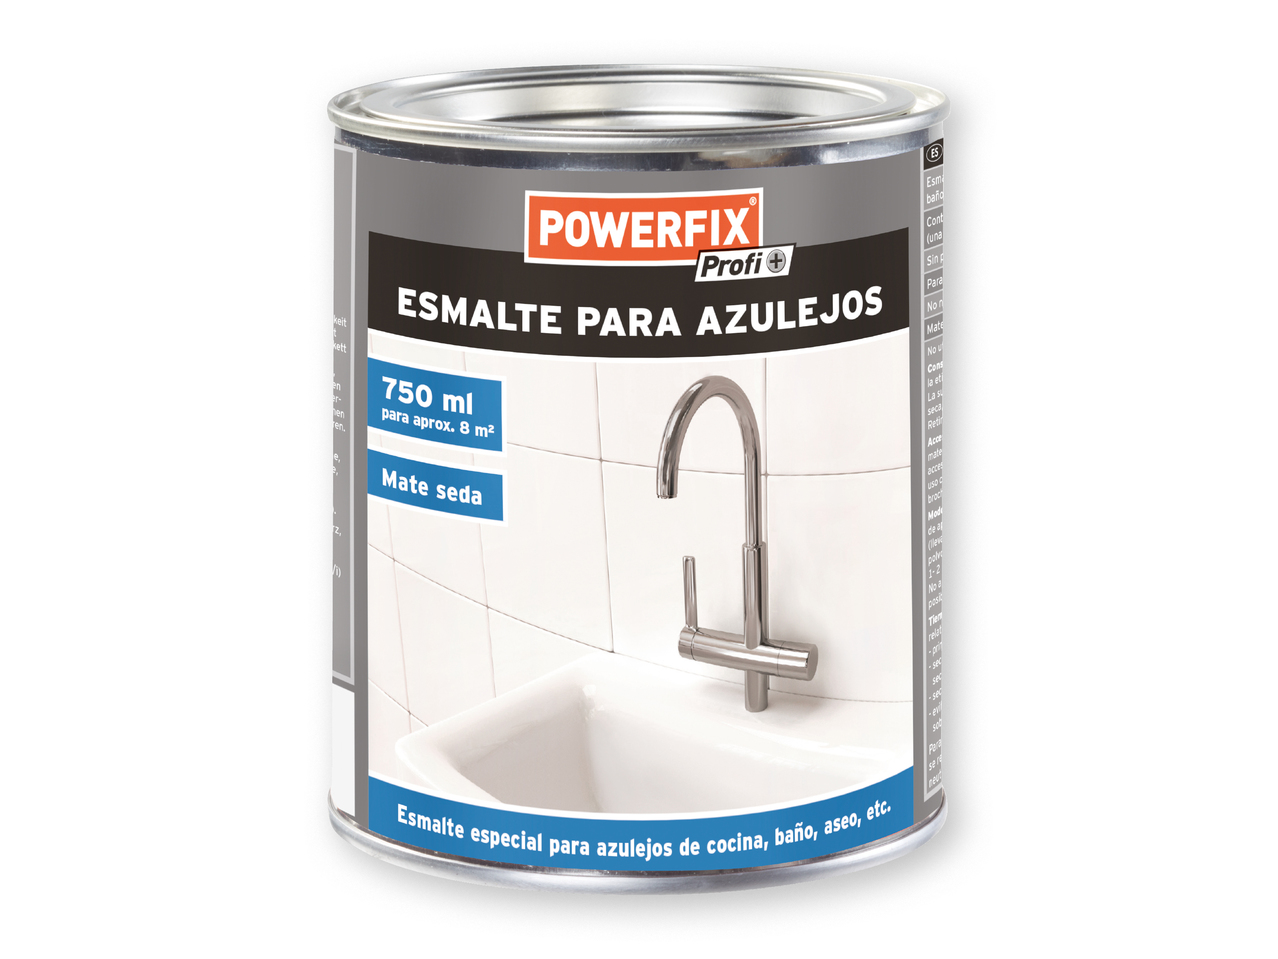 agencia tela canto POWERFIX PROFI+" Esmalte para azulejos - Lidl — España - Specials archive